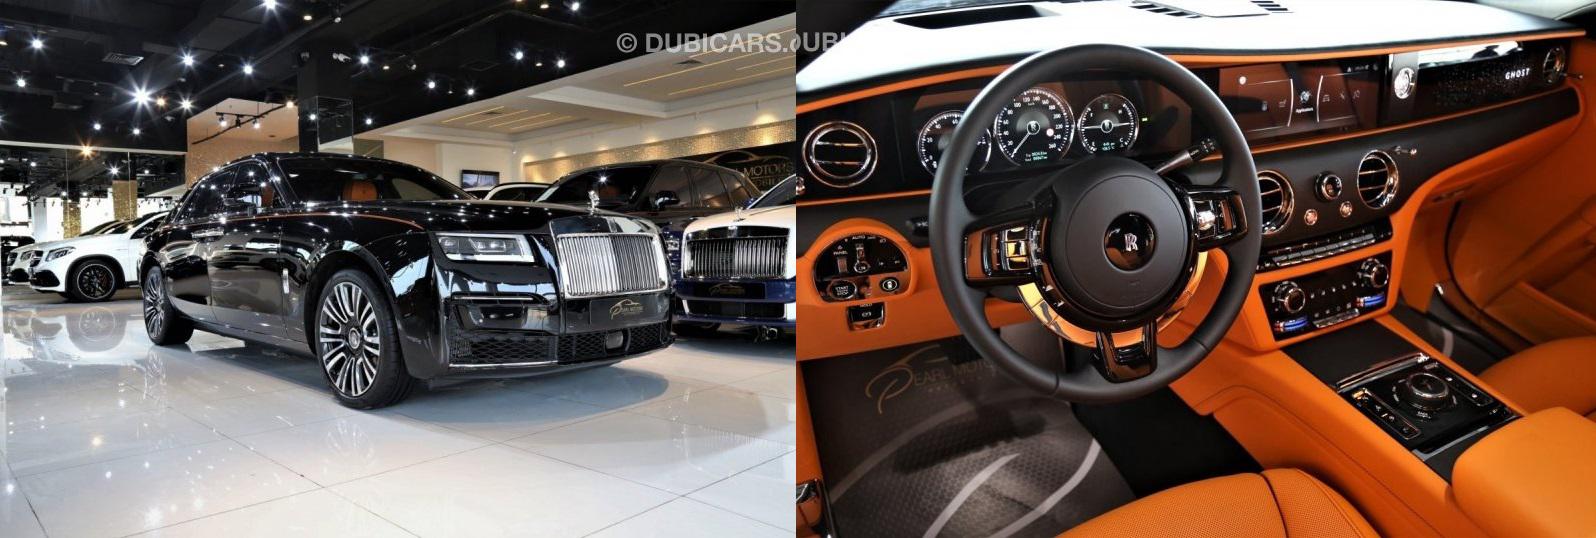 رولزرویس گوست مشکی و درون کابین نارنجی مدل 2021 در دبی